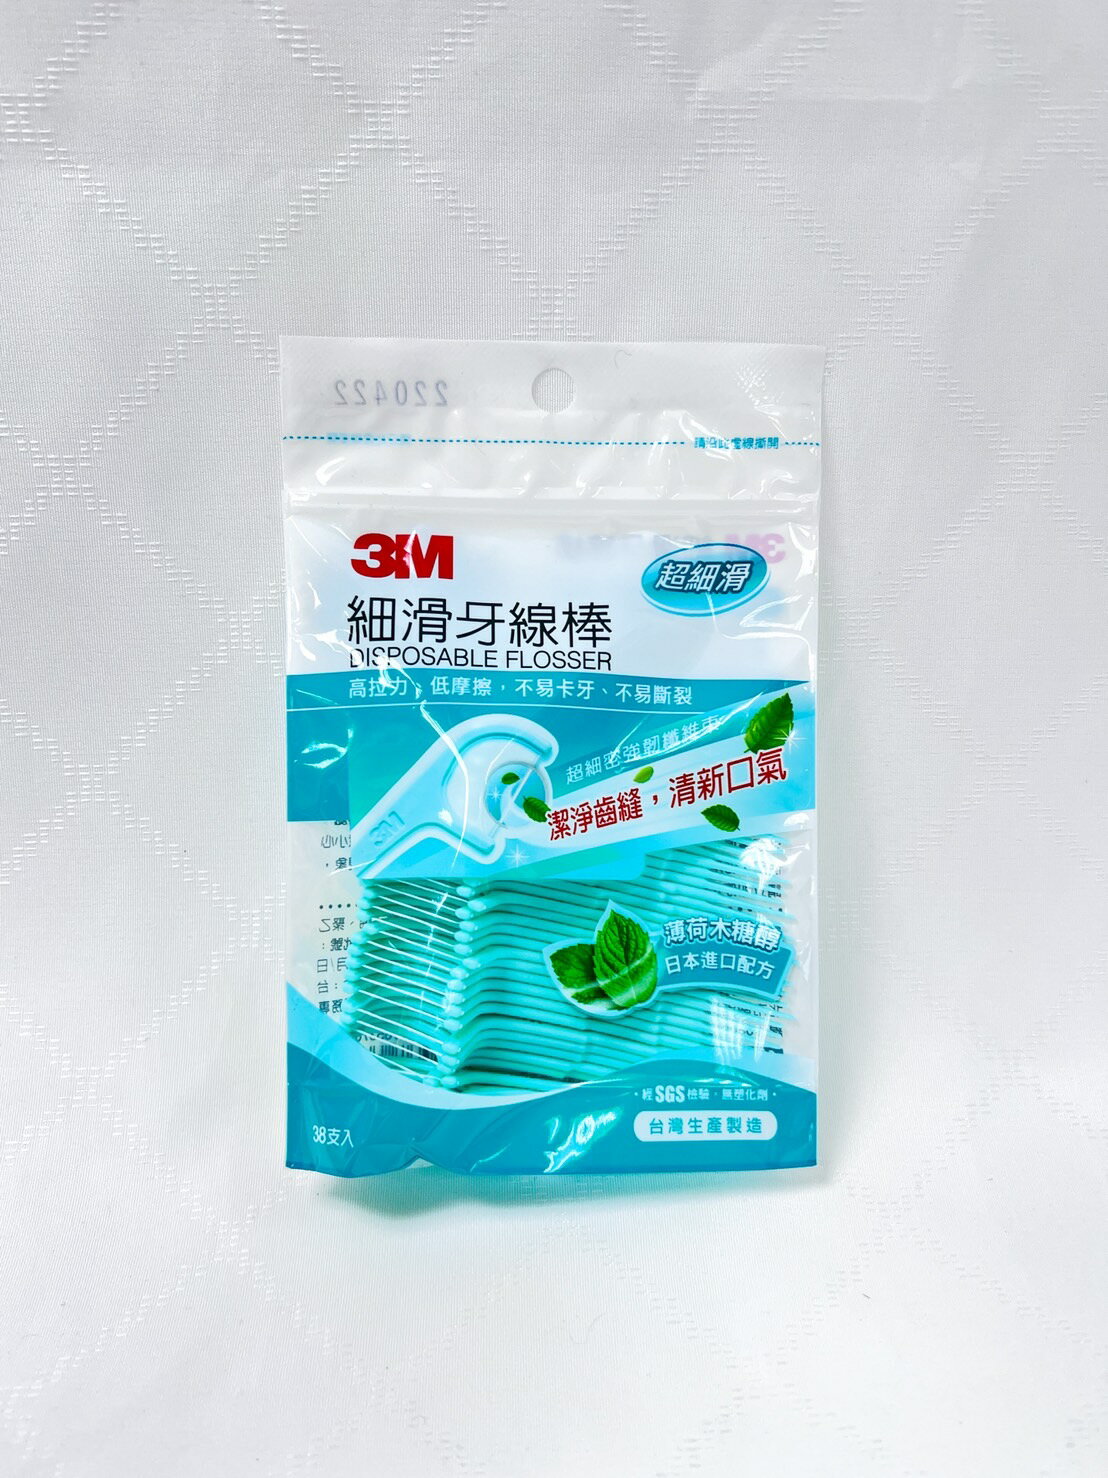 【誠意中西藥局】3M 細滑牙線棒-薄荷木醣醇 38支/包